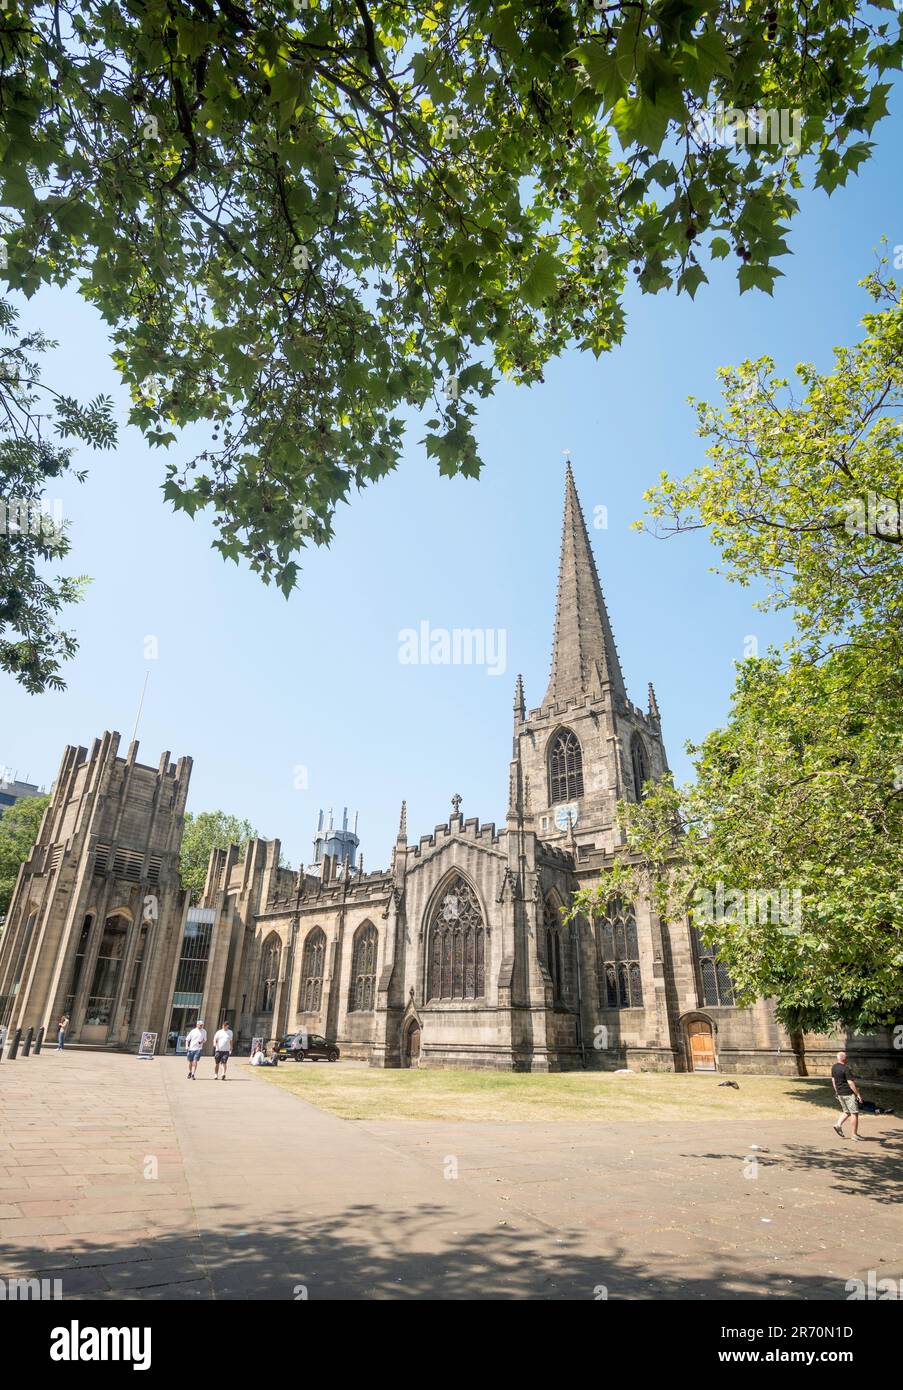 La cathédrale de Sheffield classée, l'église de la cathédrale Saint-Pierre et Saint-Paul, Sheffield, Yorkshire, Angleterre, Royaume-Uni Banque D'Images